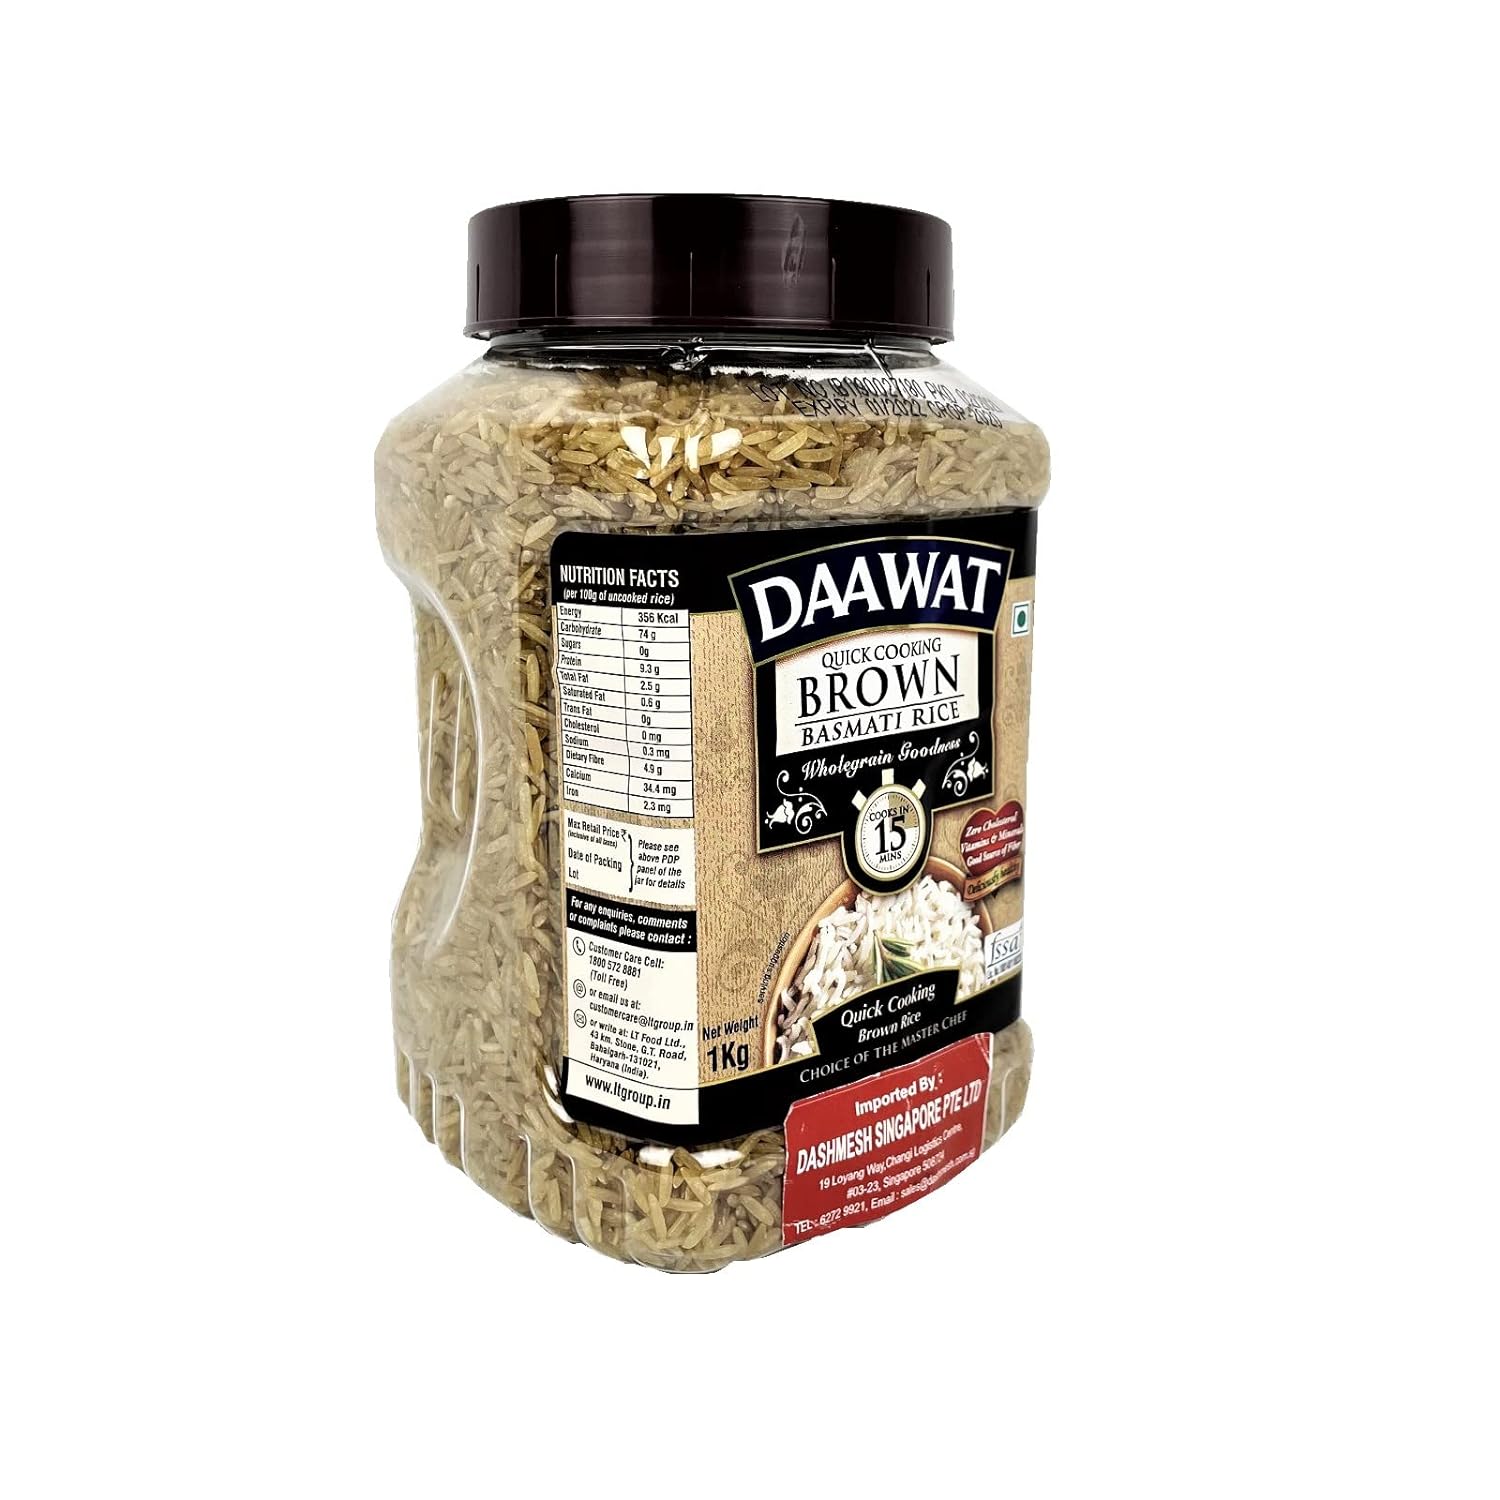 Daawat Brown, Cooks in 15-minute, Full Bran Intact, Fibre-Rich Basmati Rice Jar, 1 Kg